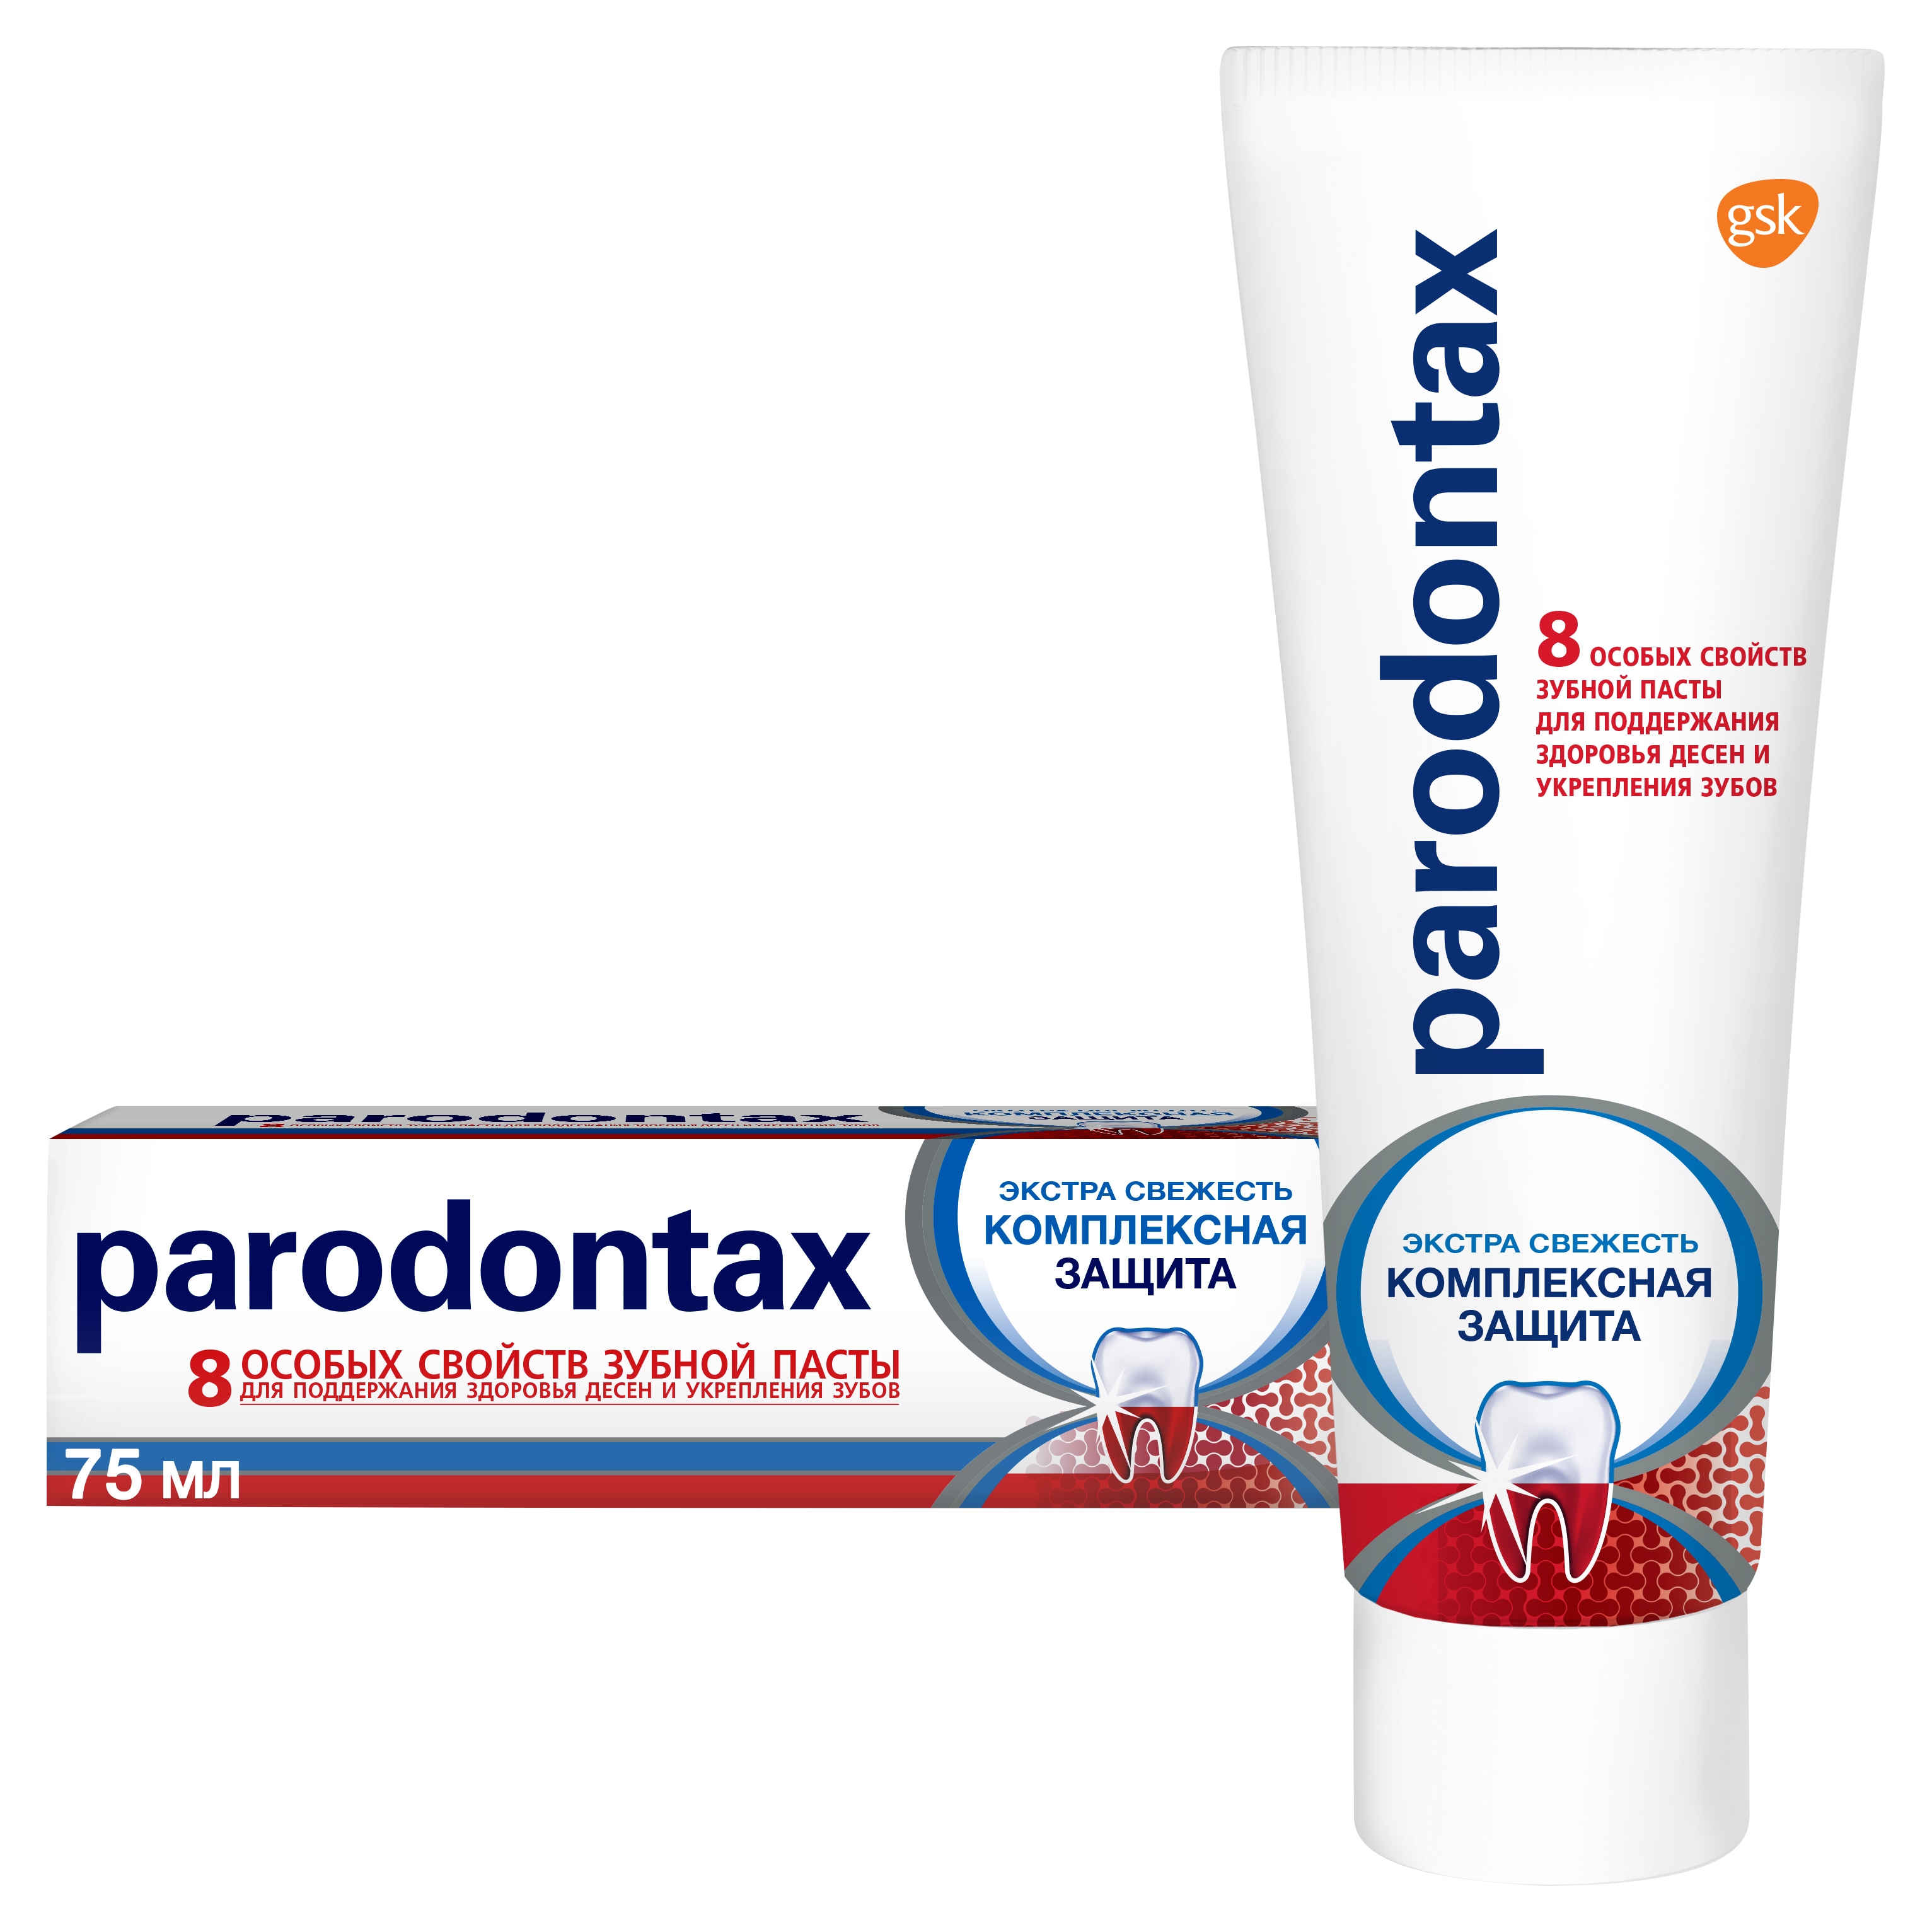 Зубная паста Parodontax Комплексная Защита, 75 мл пародонтакс комплексная защита паста зубная 75мл